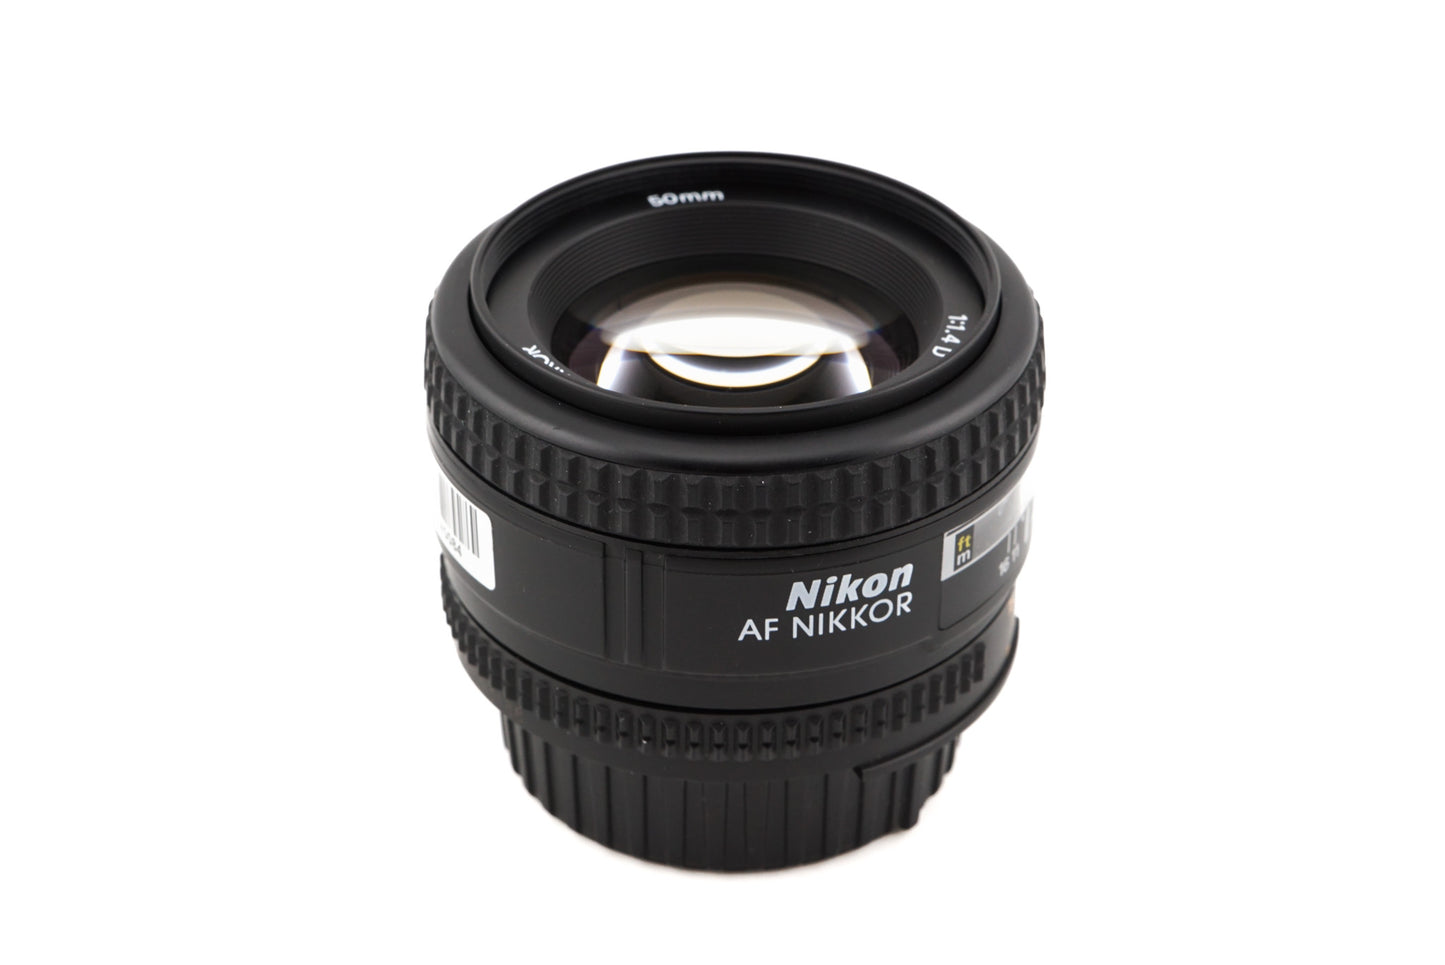 Nikon 50mm f1.4 AF Nikkor D